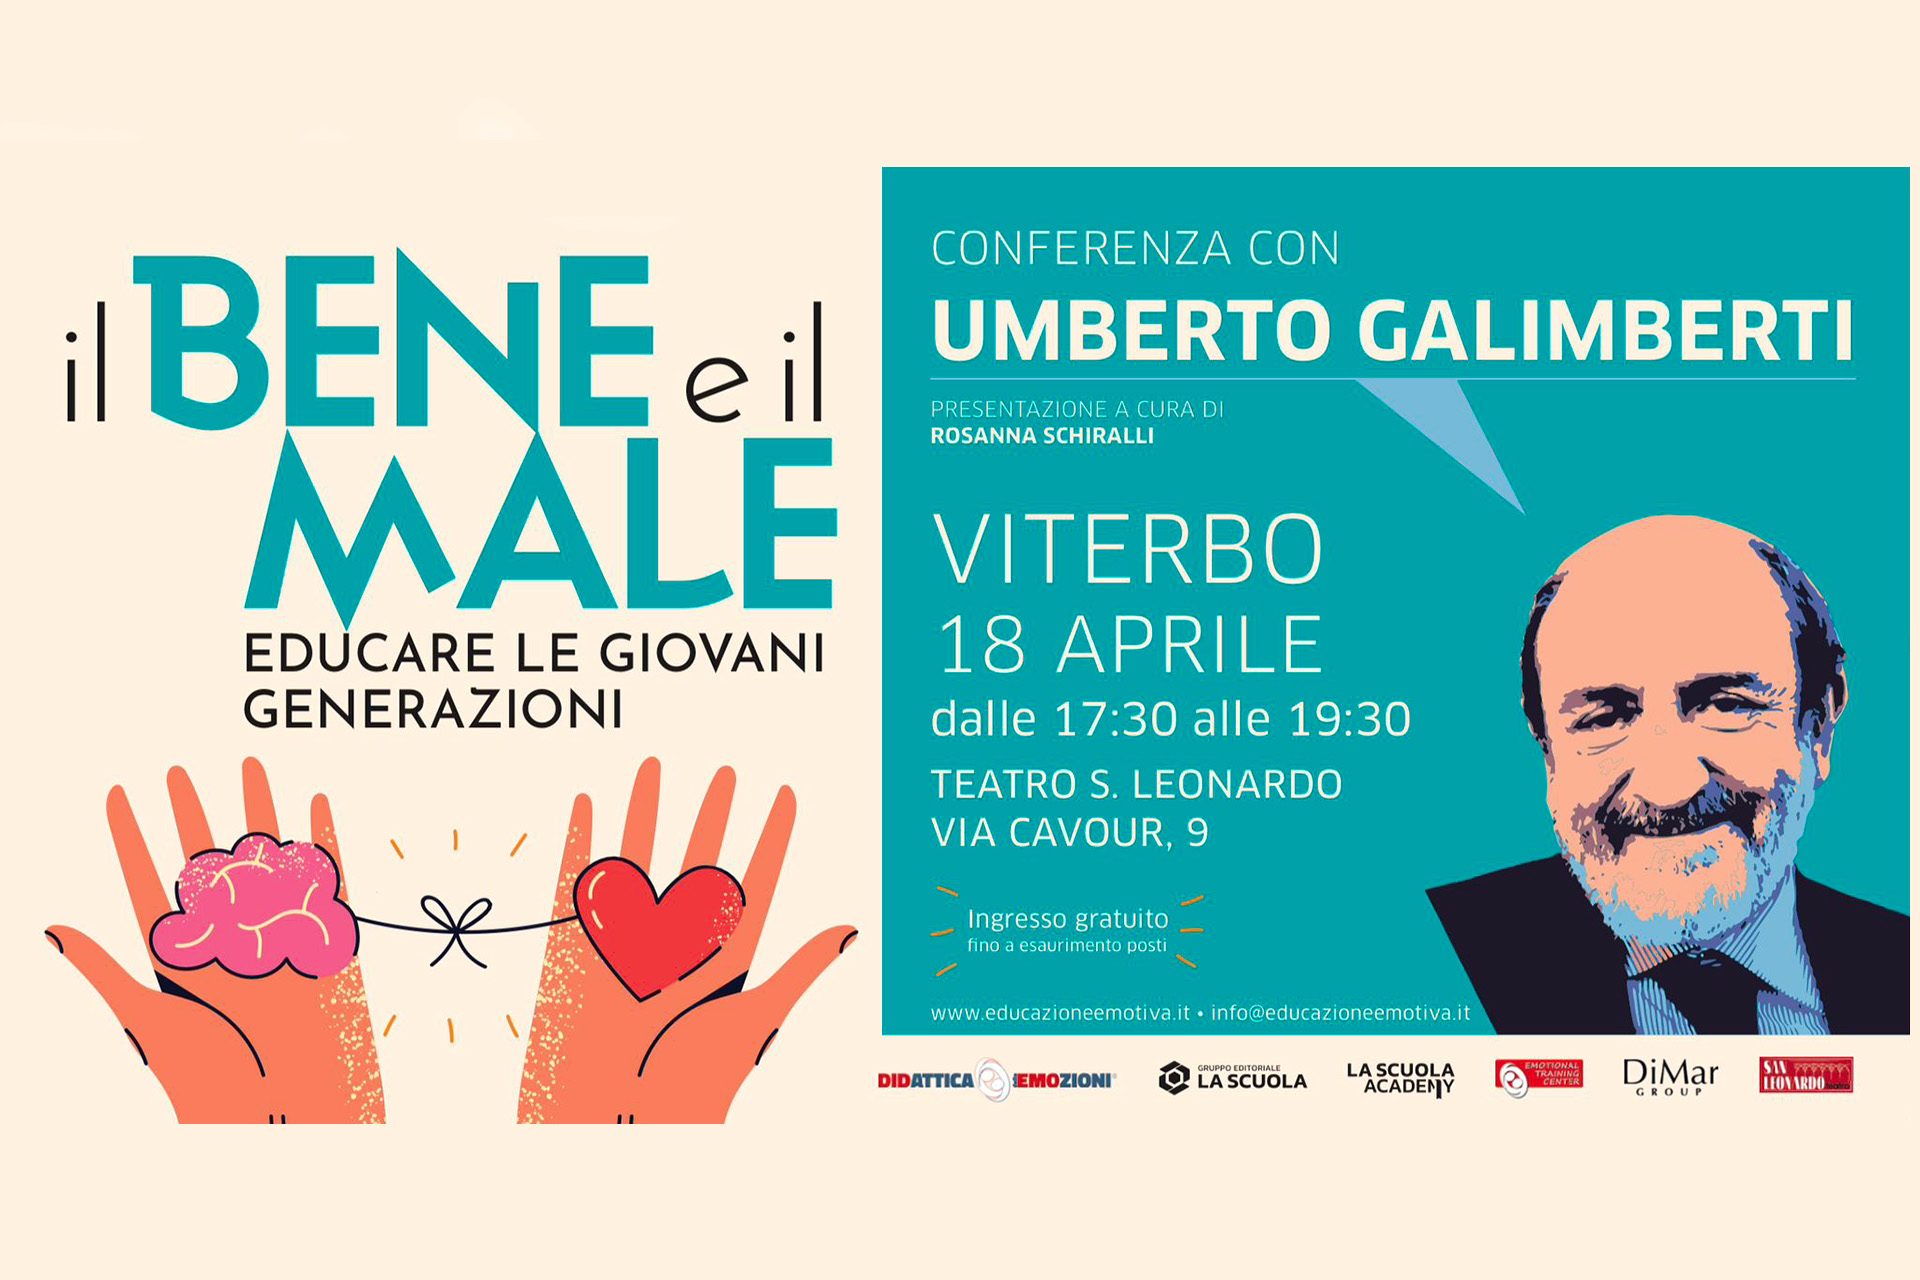 Il Bene e il Male: Educare le Giovani Generazioni - Conferenza con Umberto Galimberti